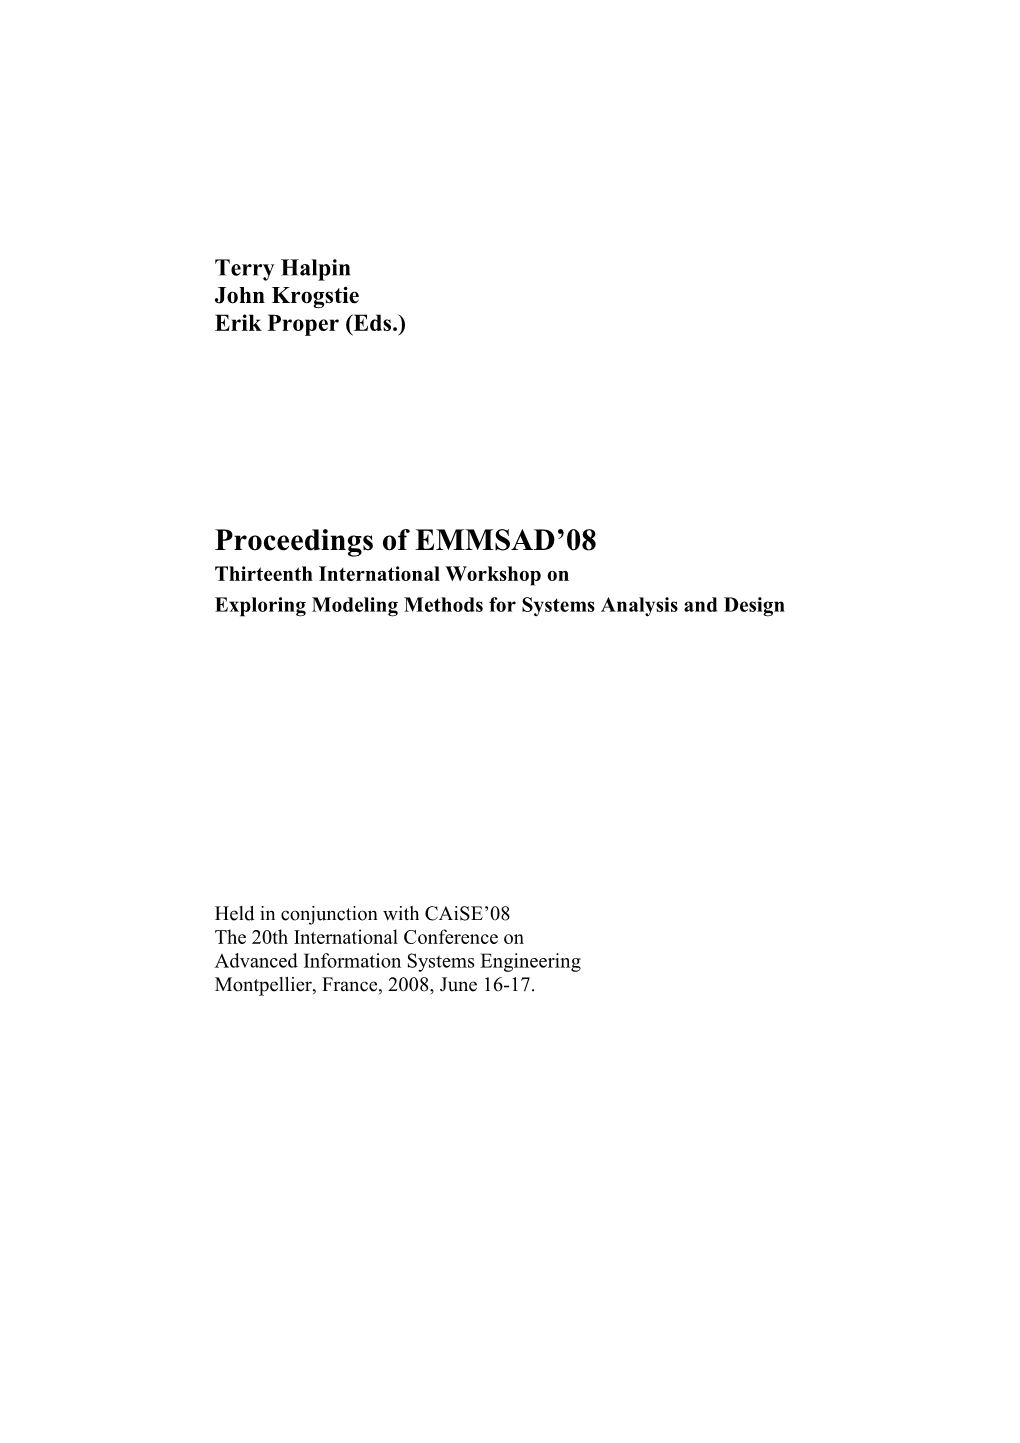 Proceedings of EMMSAD'08